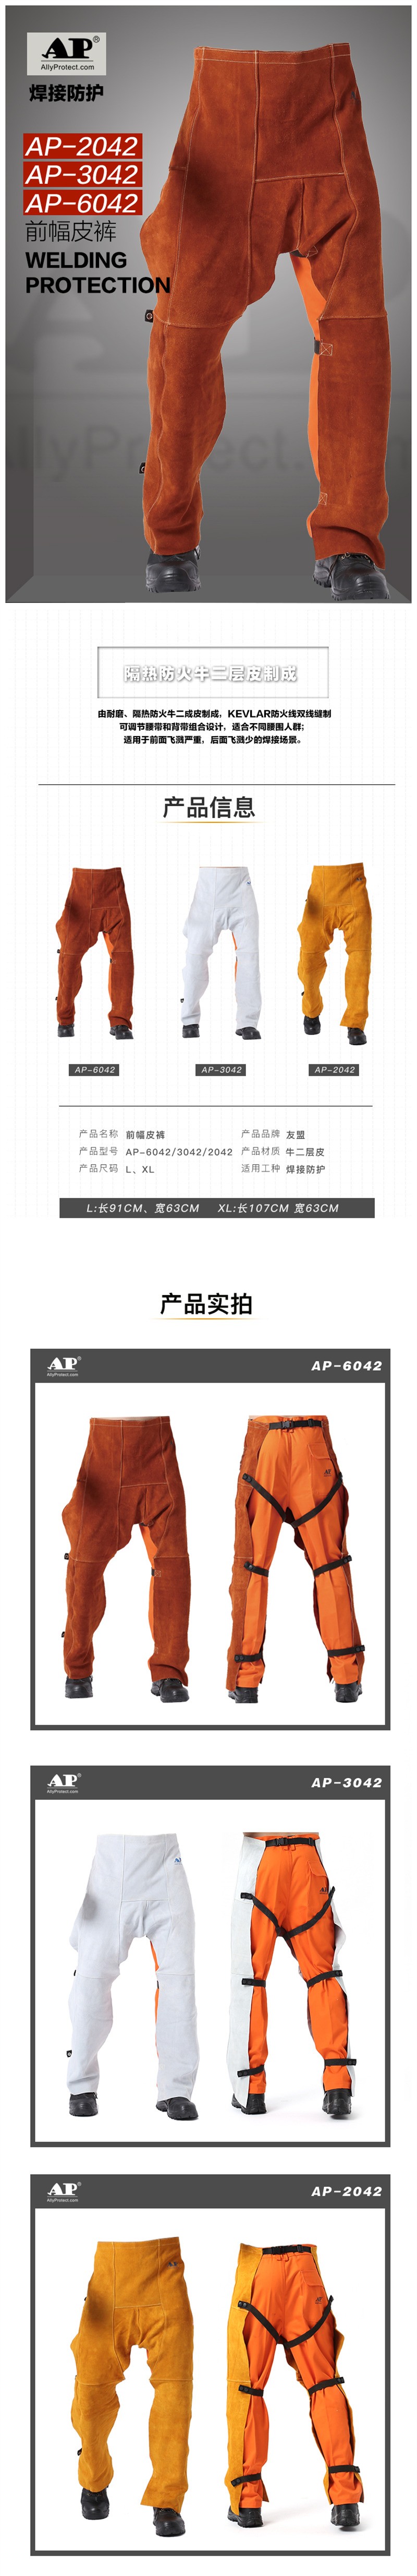 友盟AP-3042耐磨隔热防火焊工服裤子图片